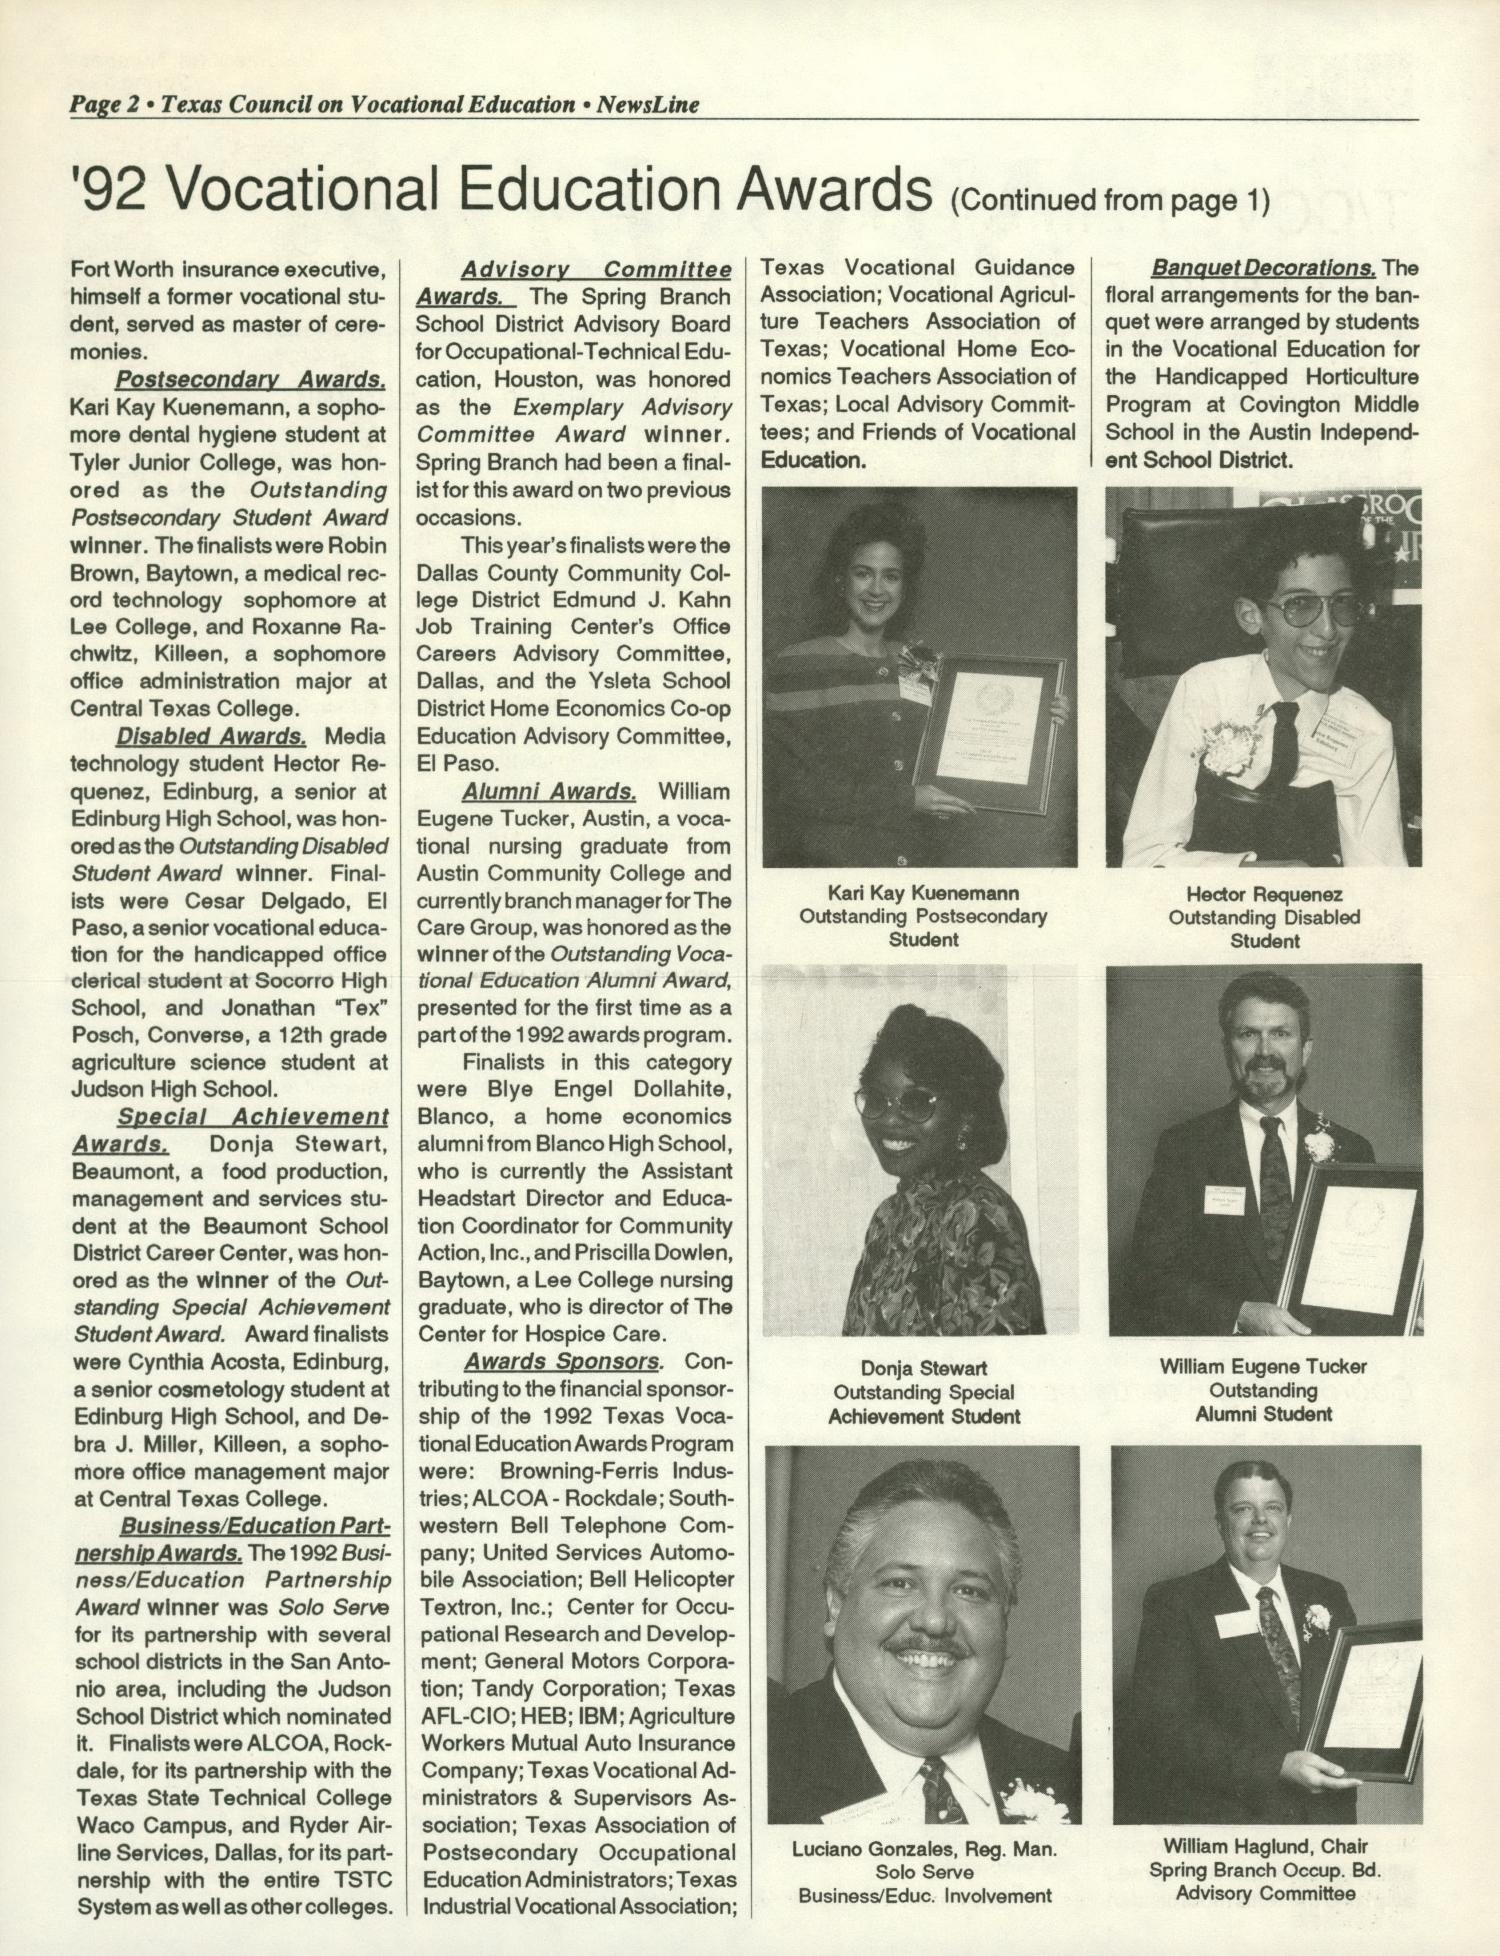 NewsLine, Volume 23, Number 3, June 1996
                                                
                                                    Page 2
                                                